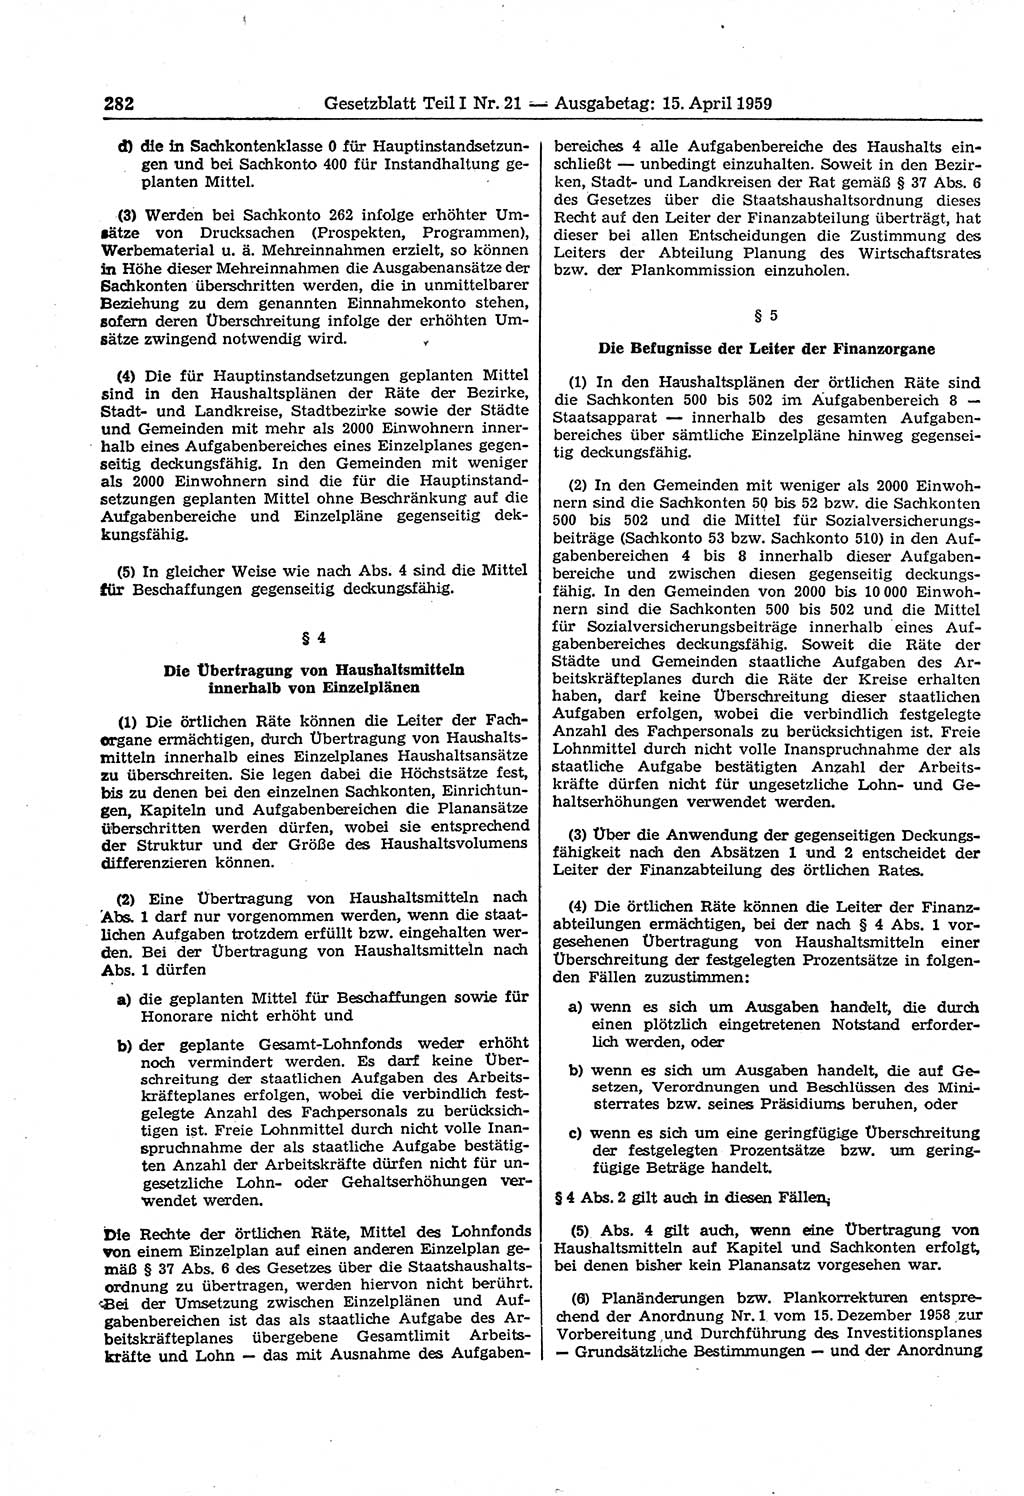 Gesetzblatt (GBl.) der Deutschen Demokratischen Republik (DDR) Teil Ⅰ 1959, Seite 282 (GBl. DDR Ⅰ 1959, S. 282)